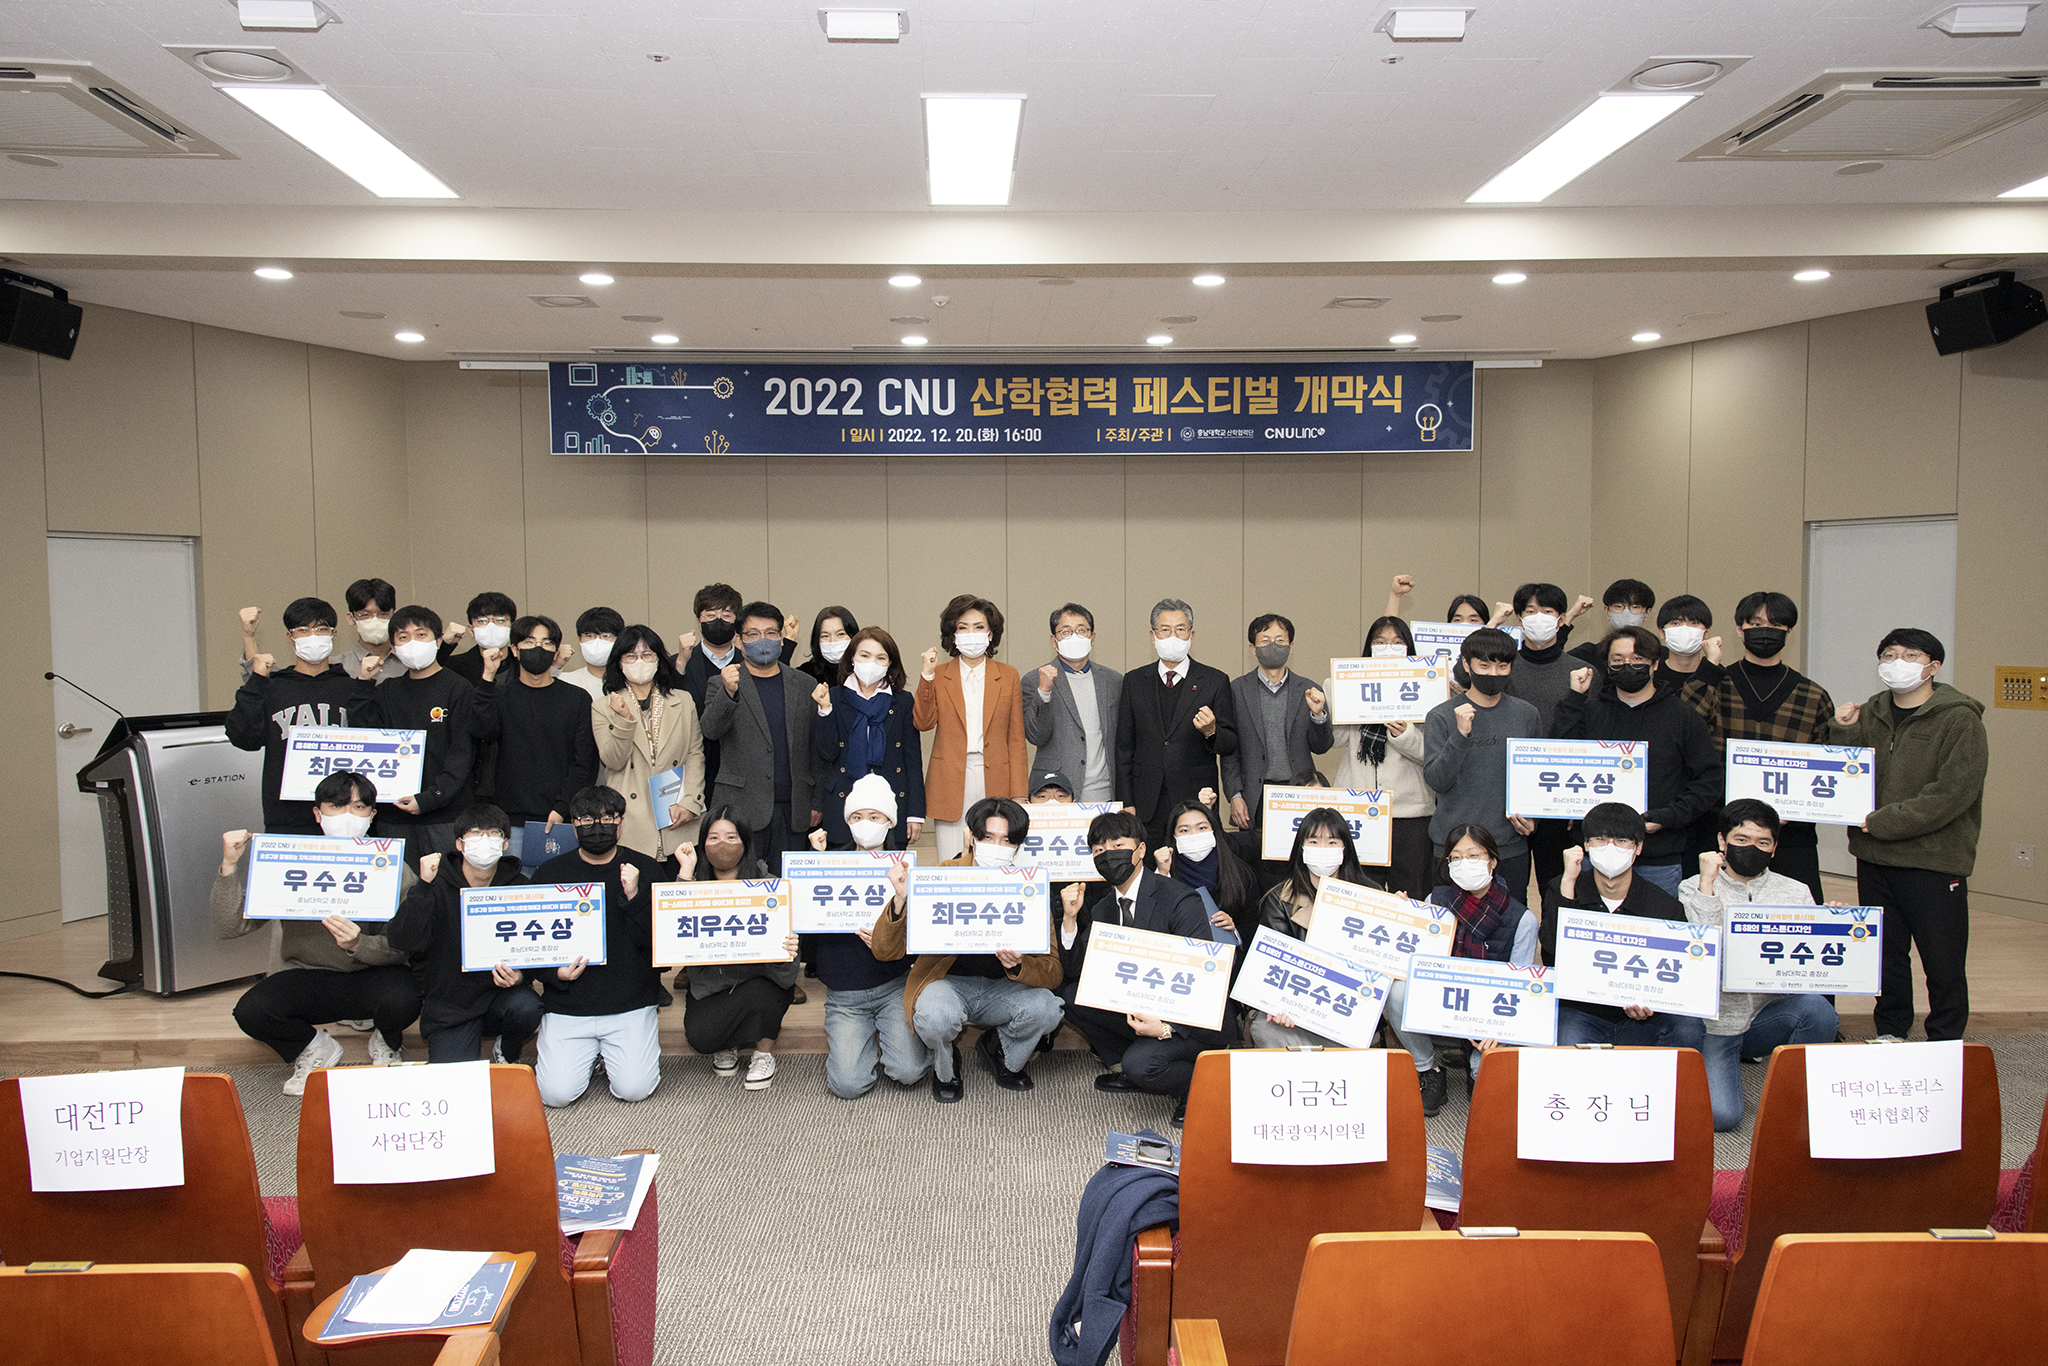 ‘2022 CNU 산학협력 페스티벌’ 개최 사진